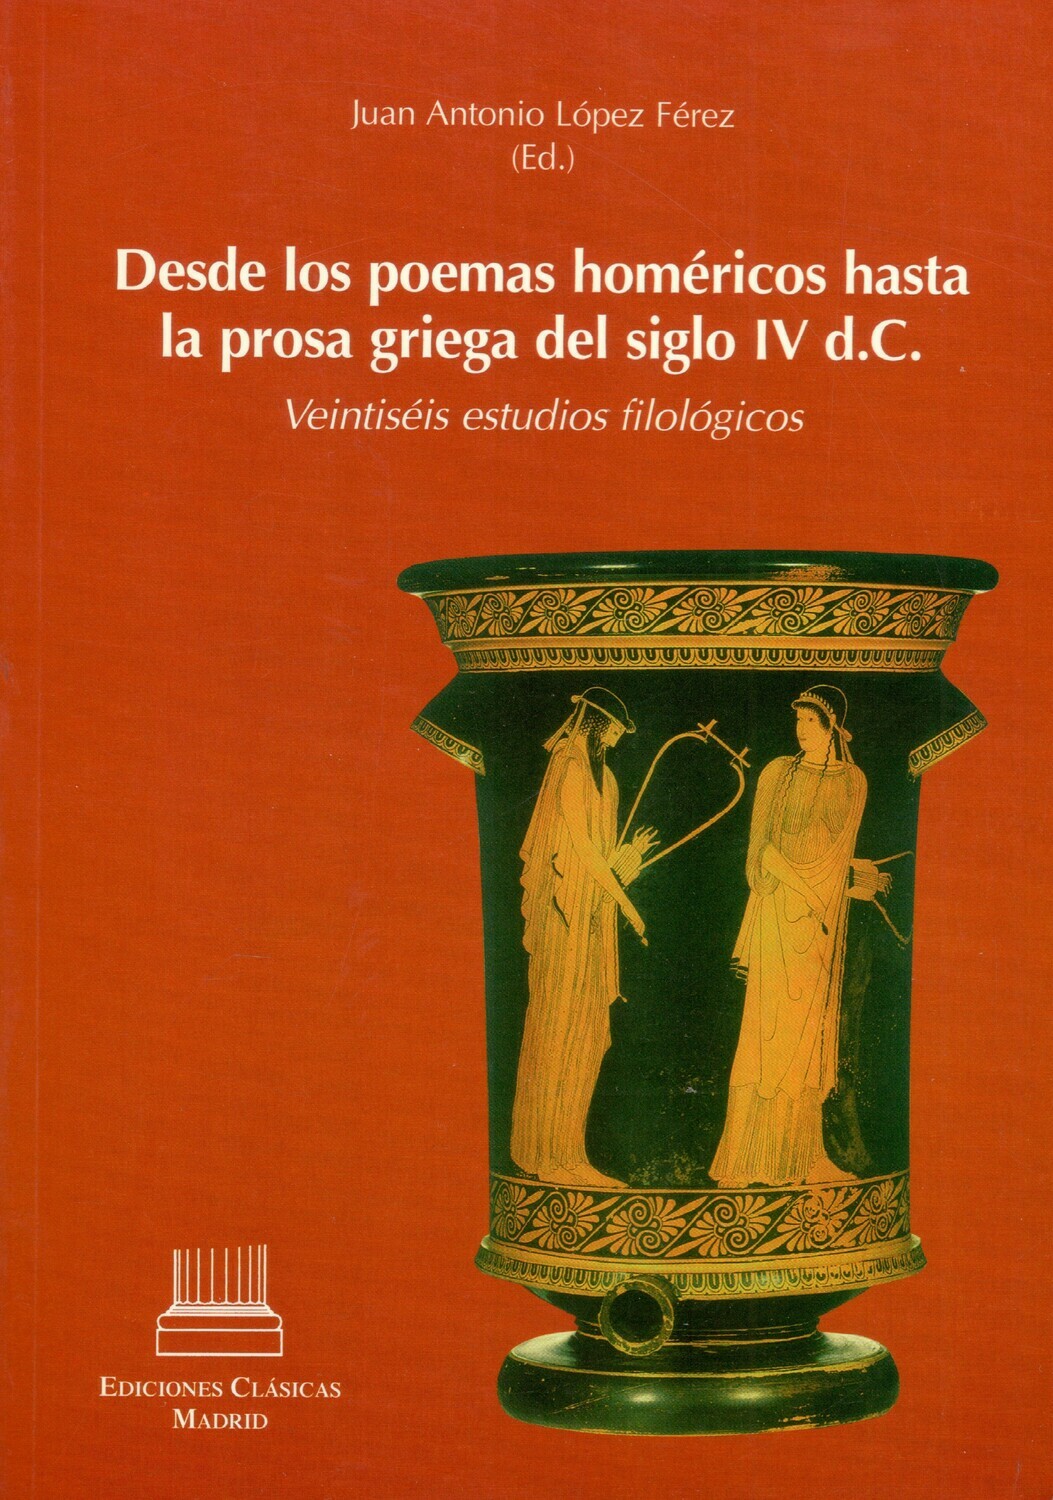 DESDE LOS POEMAS HOMERICOS HASTA LA PROSA GRIEGA DEL SIGLO IV d.C.